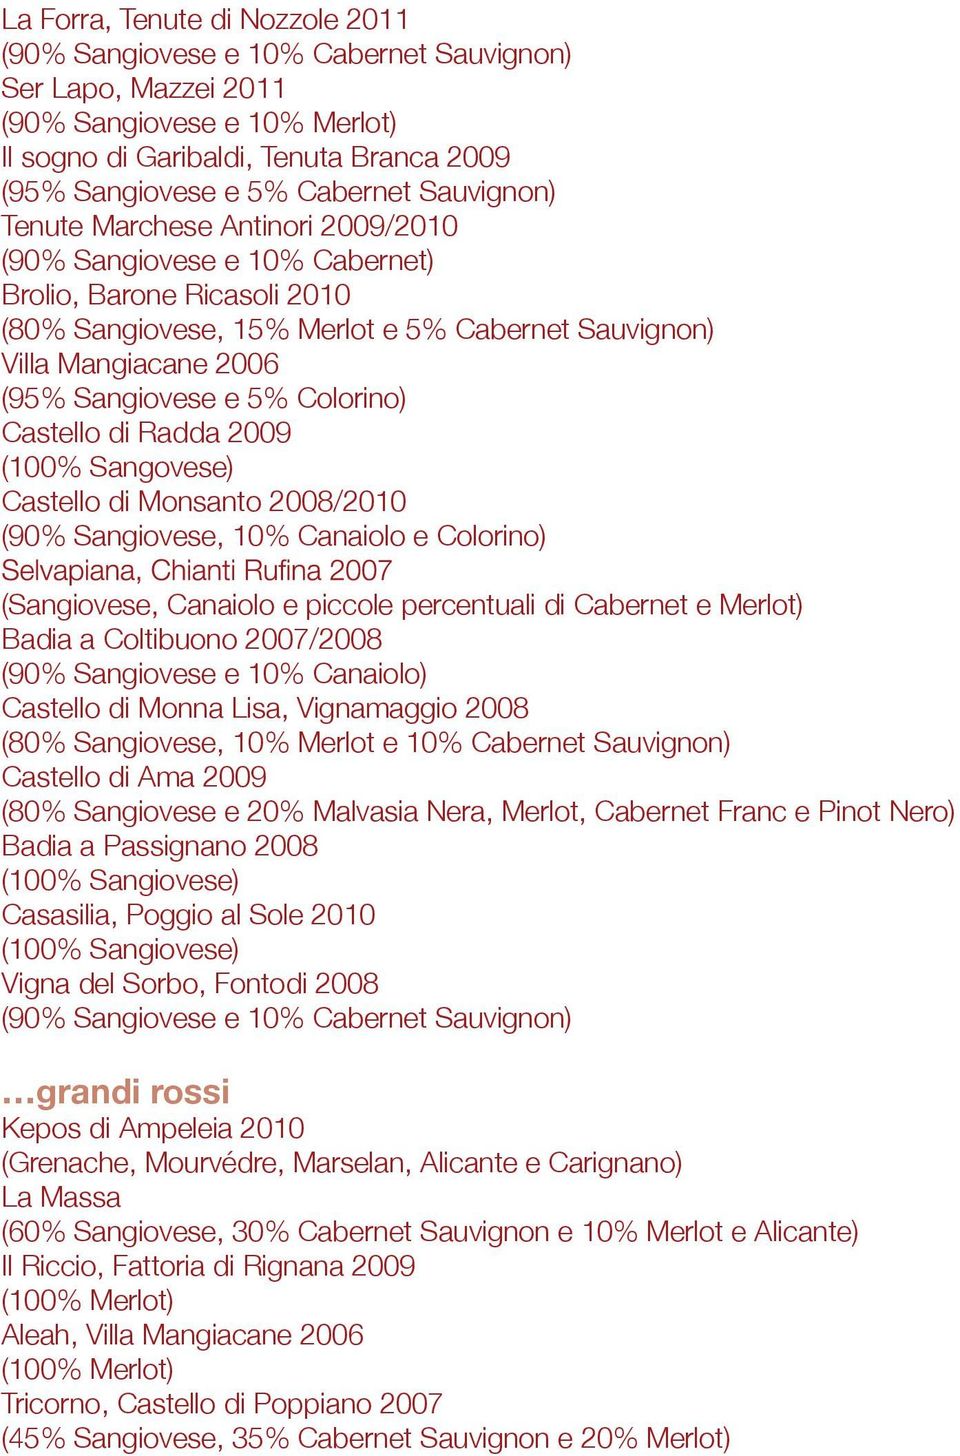 5% Colorino) Castello di Radda 2009 (100% Sangovese) Castello di Monsanto 2008/2010 (90% Sangiovese, 10% Canaiolo e Colorino) (Sangiovese, Canaiolo e piccole percentuali di Cabernet e Merlot) Badia a